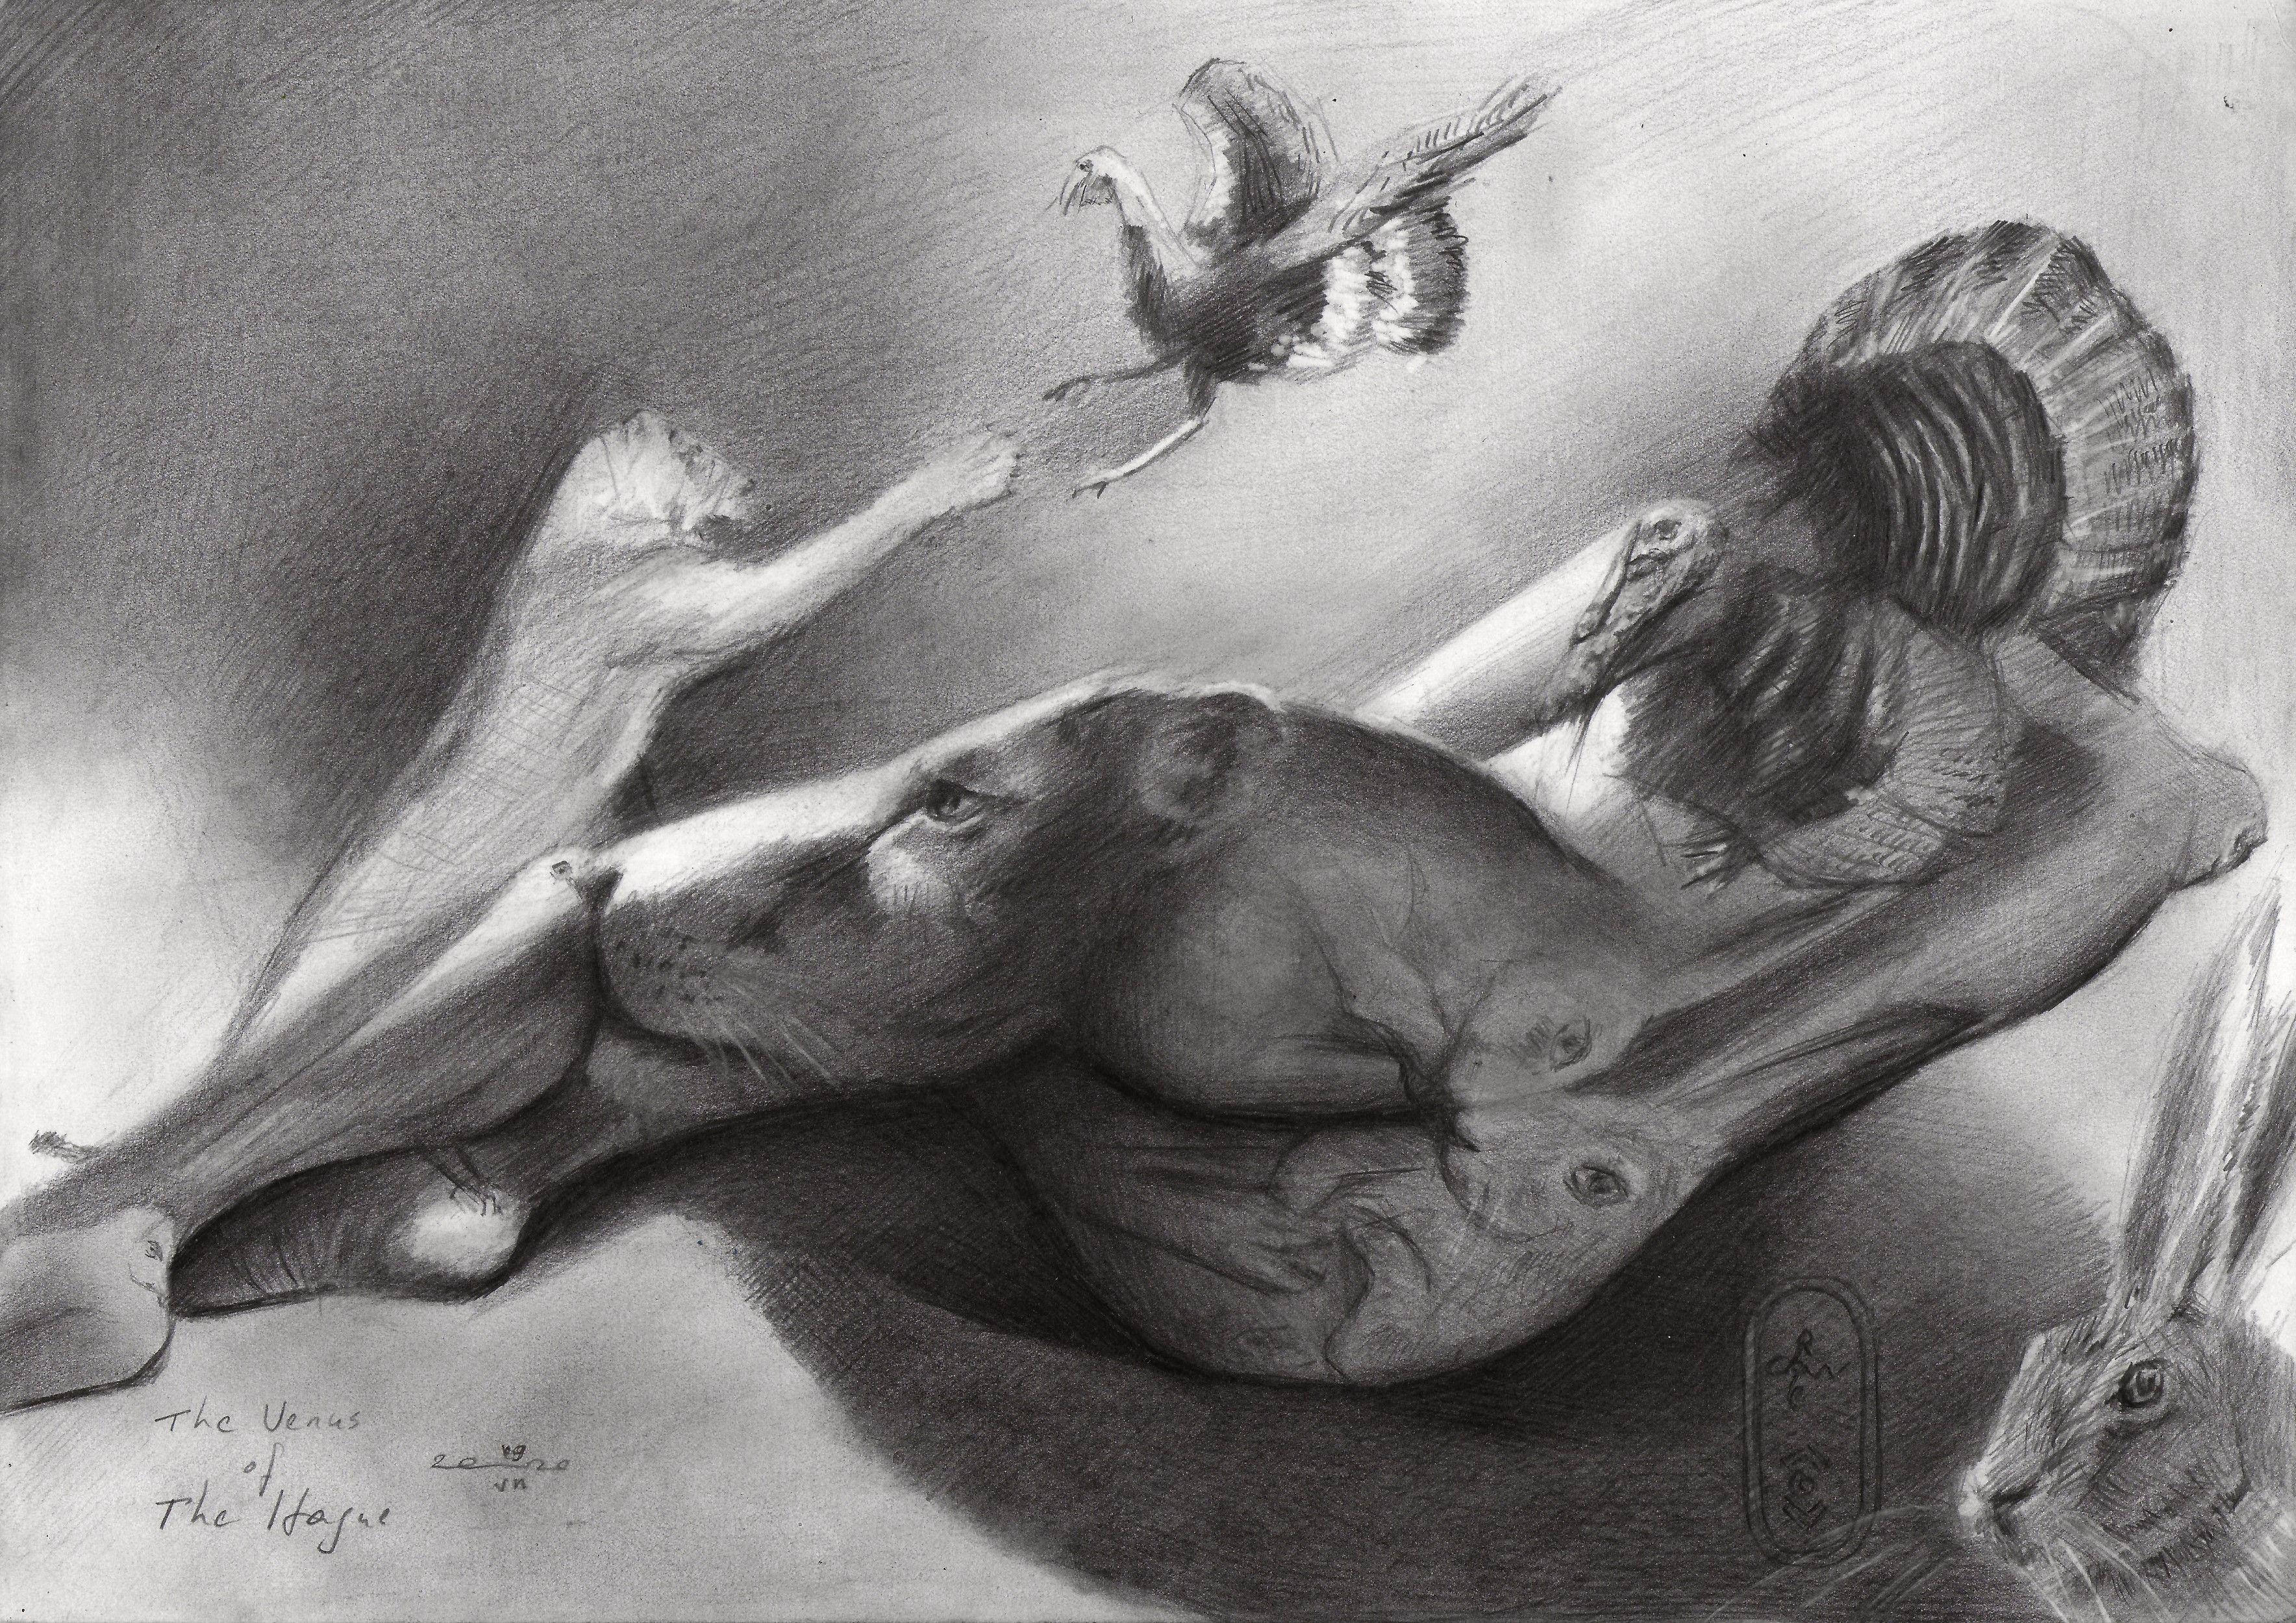 The Venus of The Hague â€" 09-07-20, Zeichnung, Bleistift/Buntstift auf Papier – Art von Corne Akkers